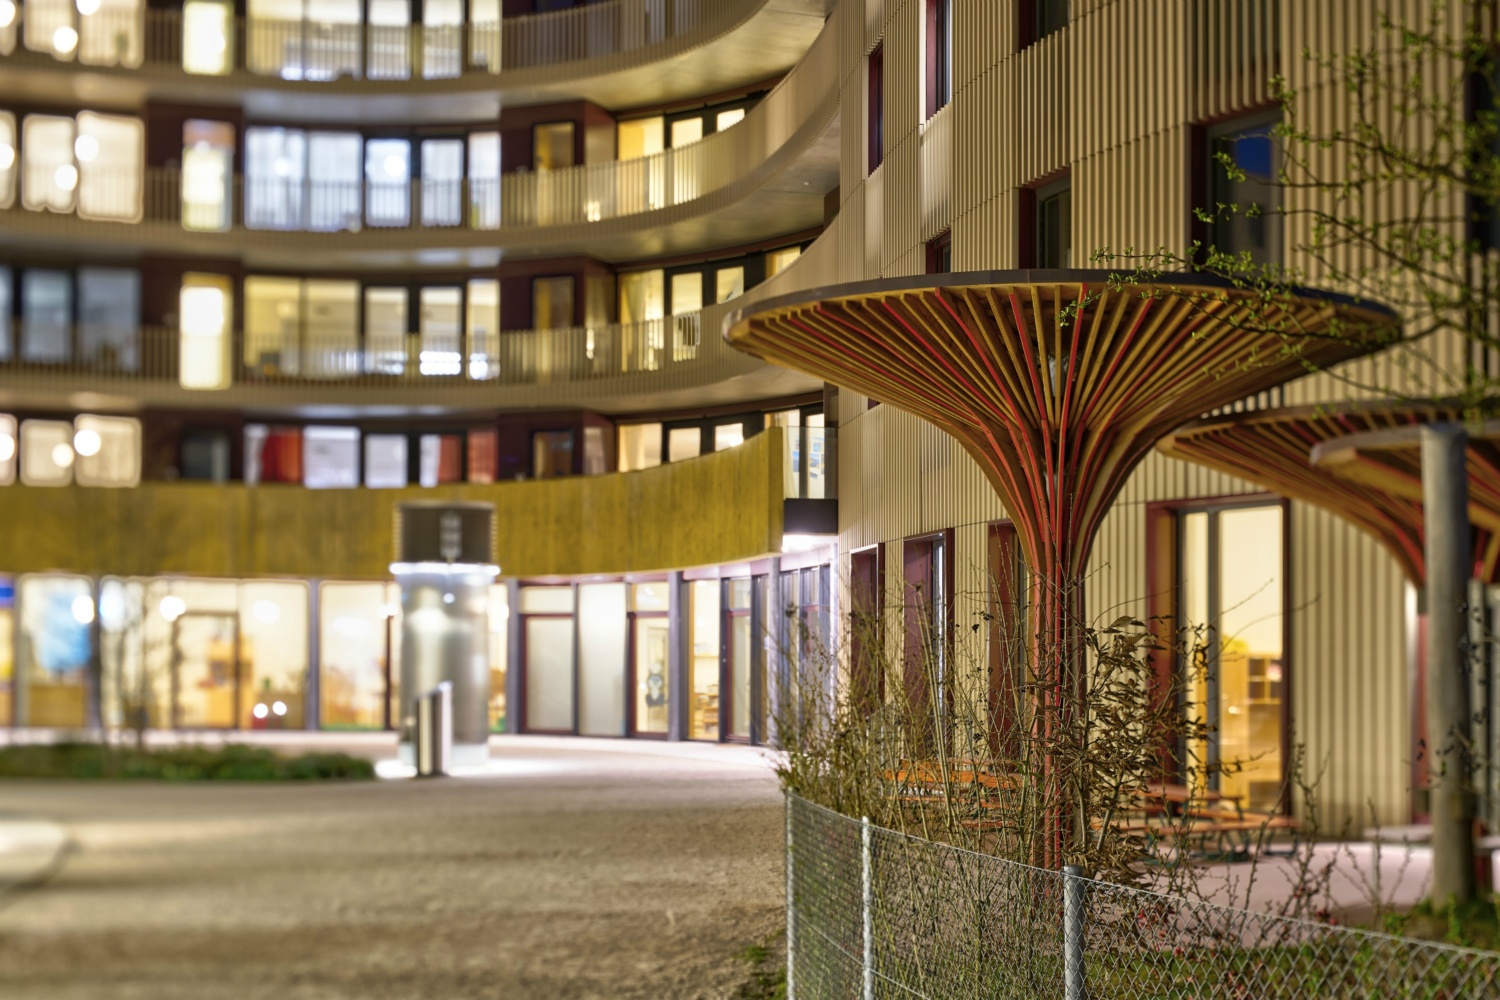 ETH Hönggerberg-Campus 2019